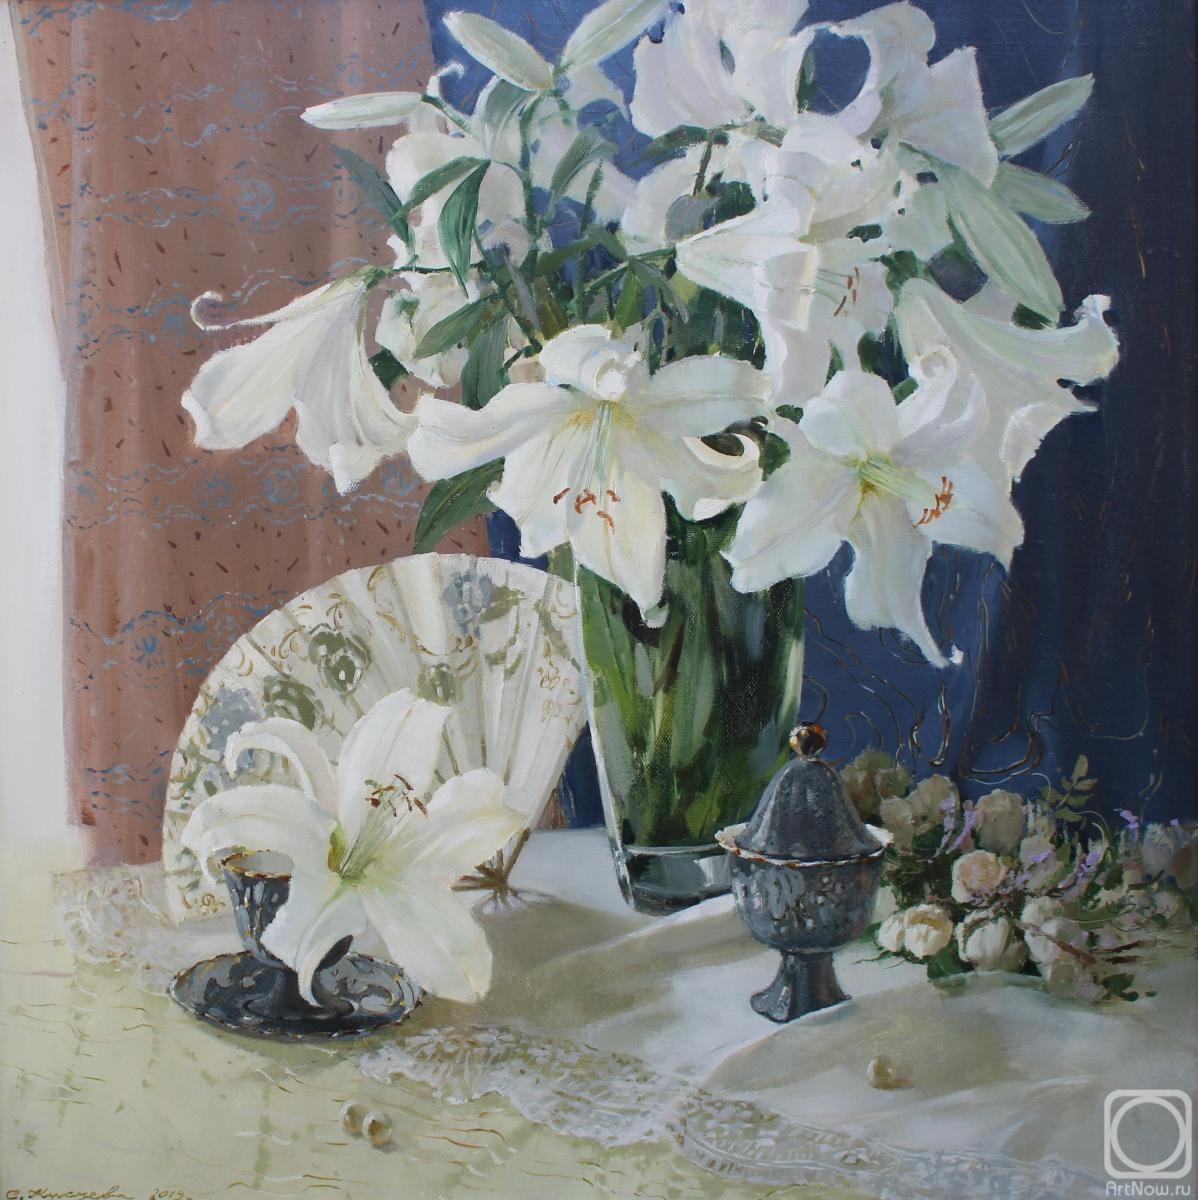 Kukueva Svetlana. Lace of white lilies